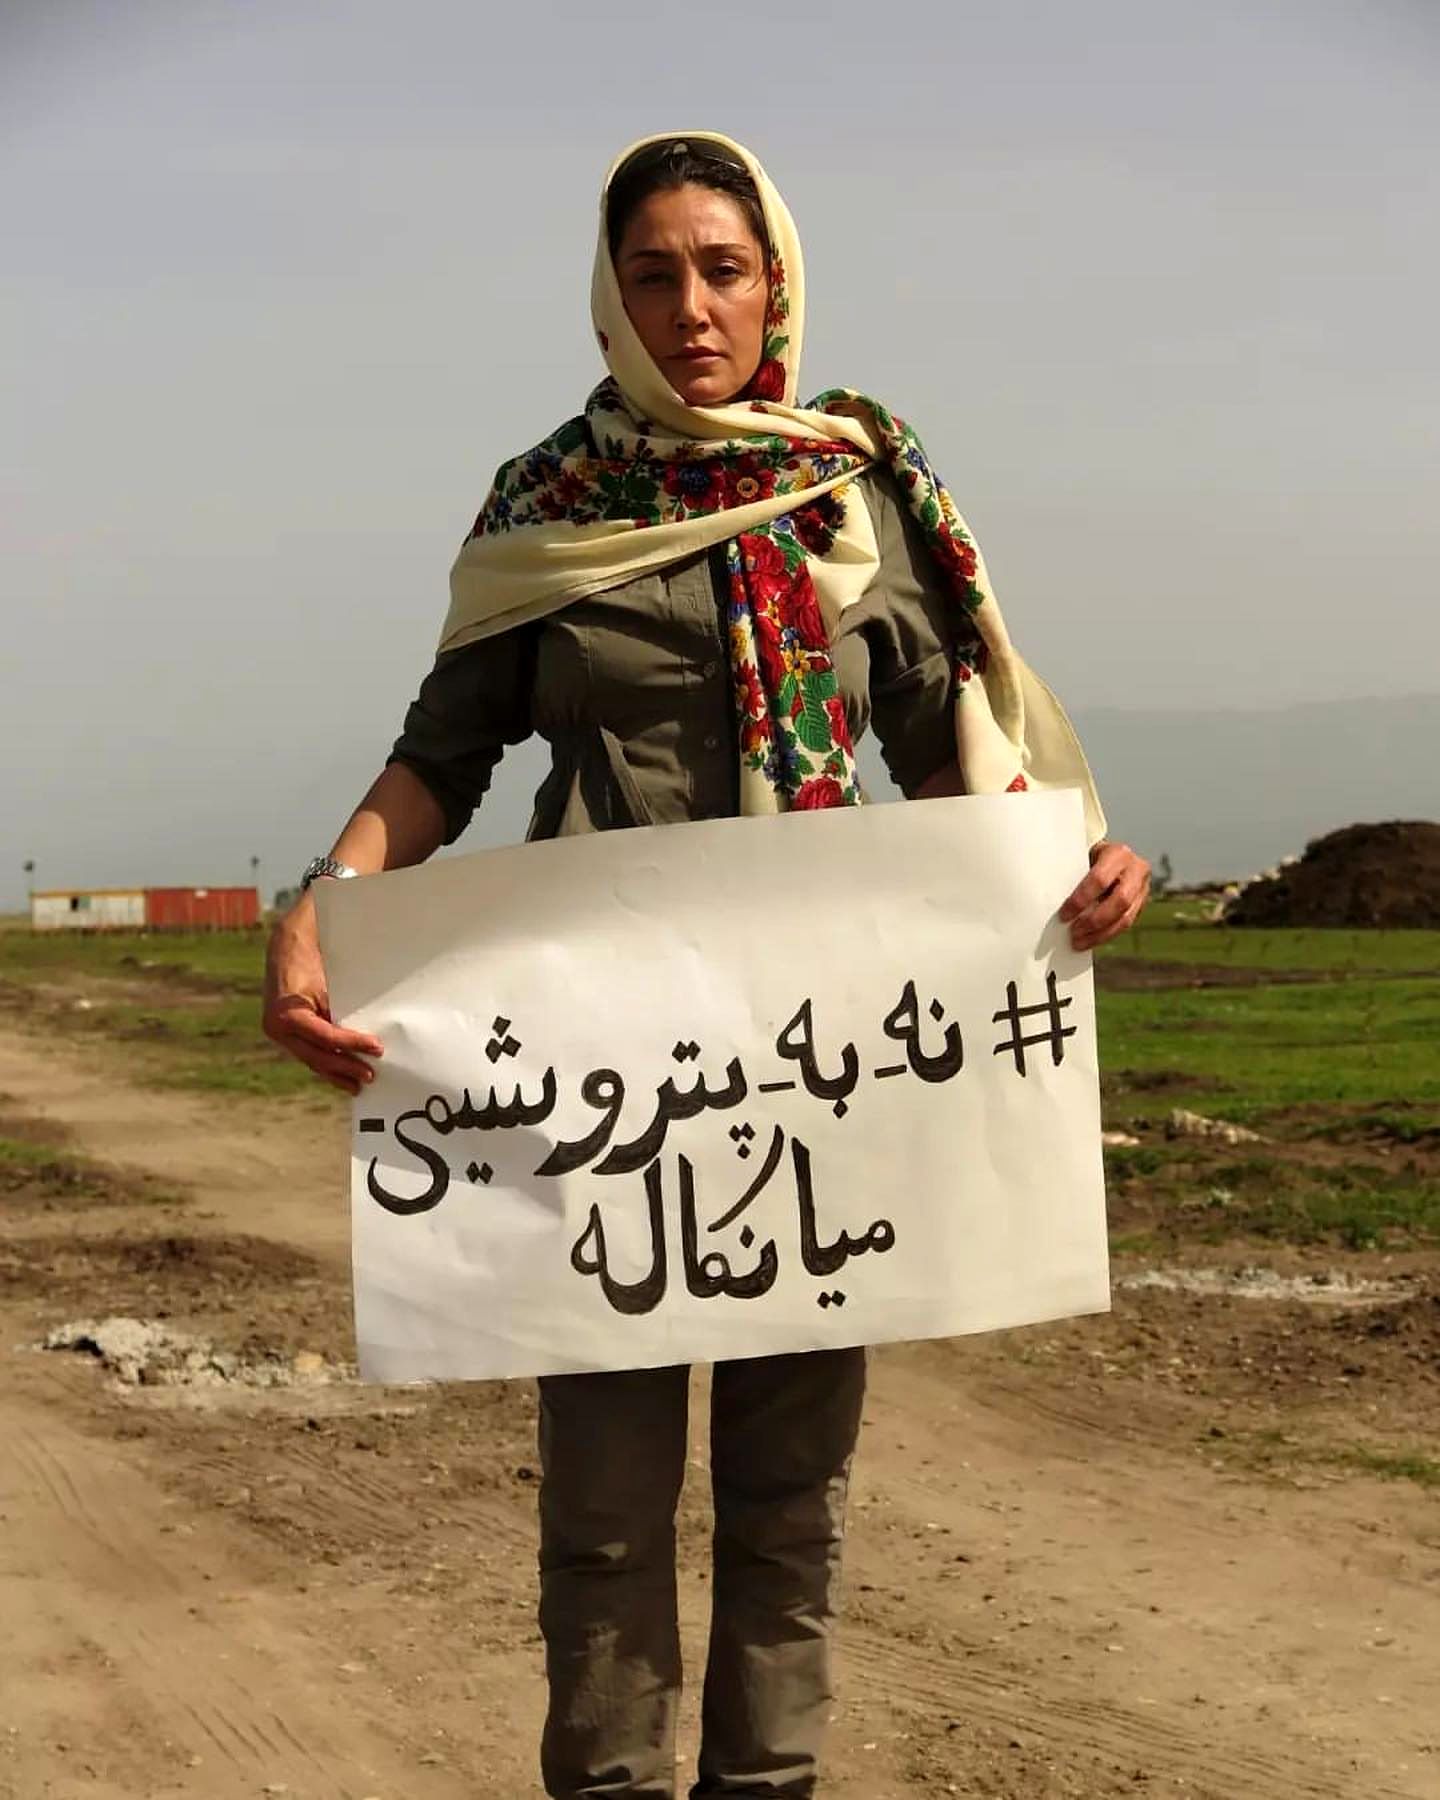 هدیه تهرانی با تابلوی «نه به پتروشیمی میانکاله» 